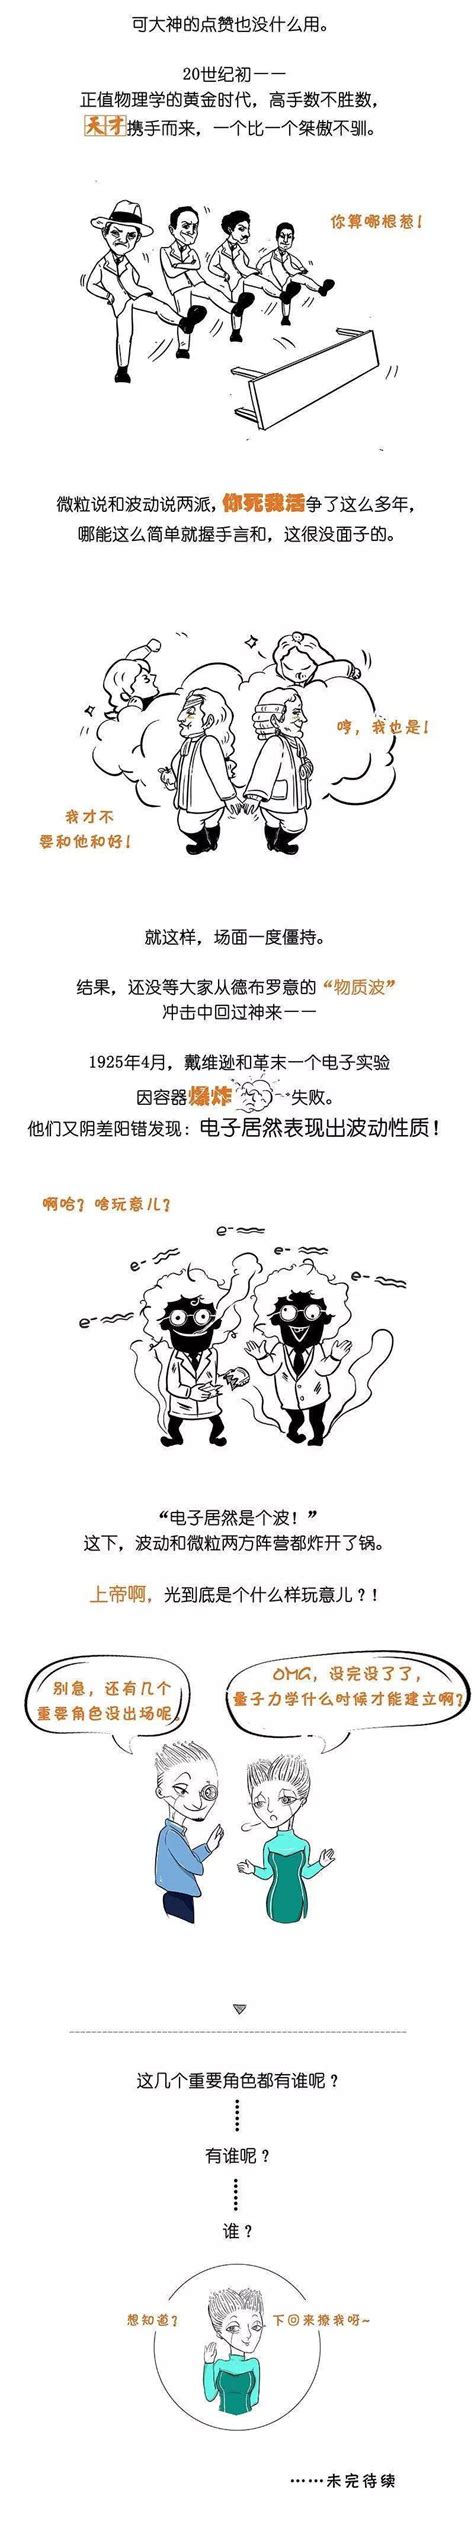 漫画 | 中国科学家研制出首个有潜在应用的量子计算原型机